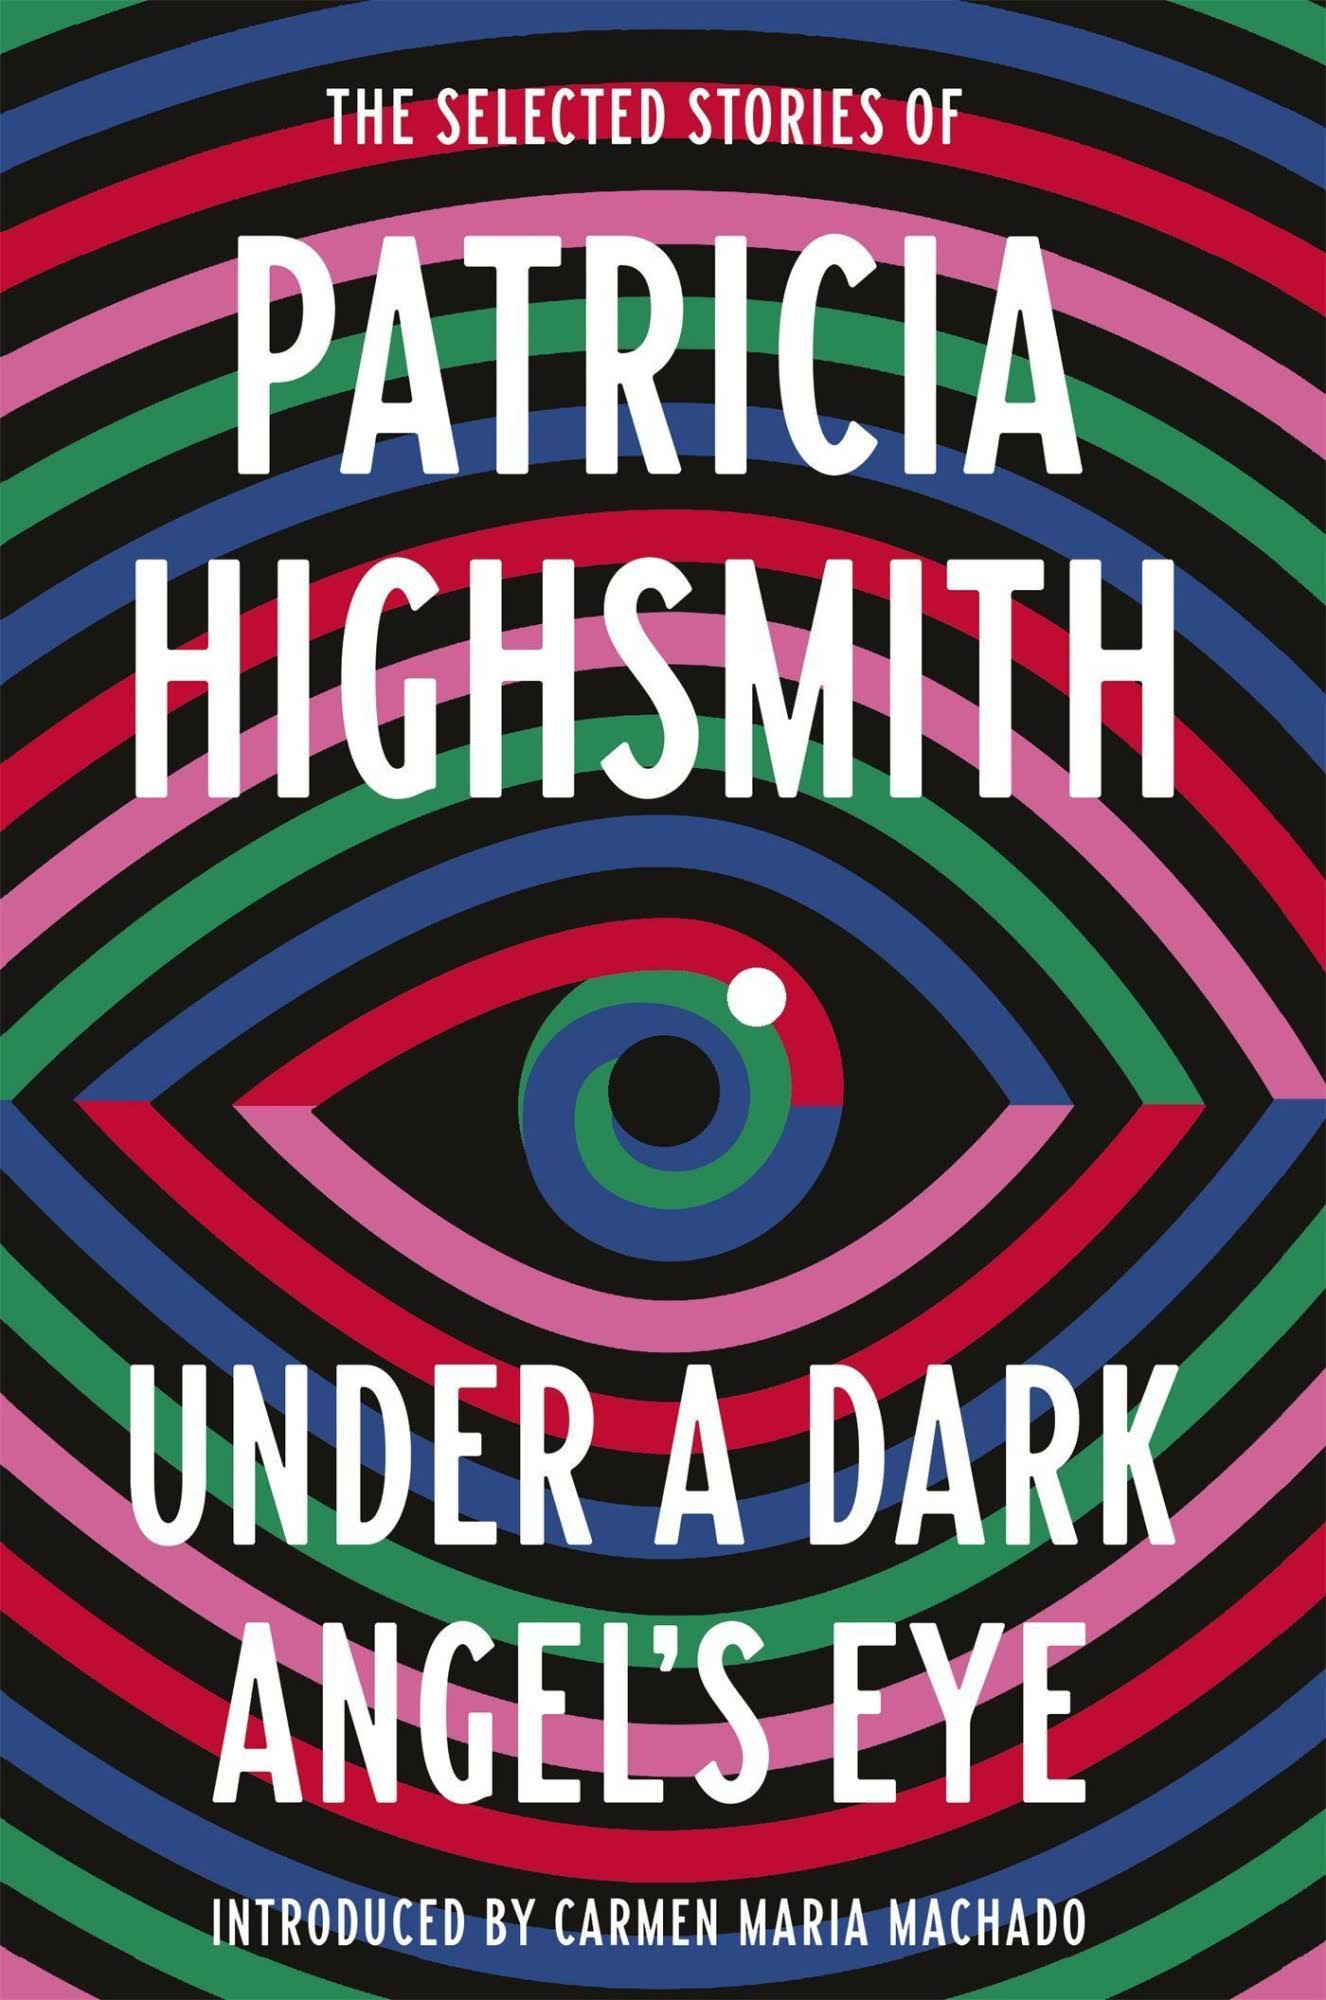 Under a Dark Angel's Eye by Patricia Highsmith